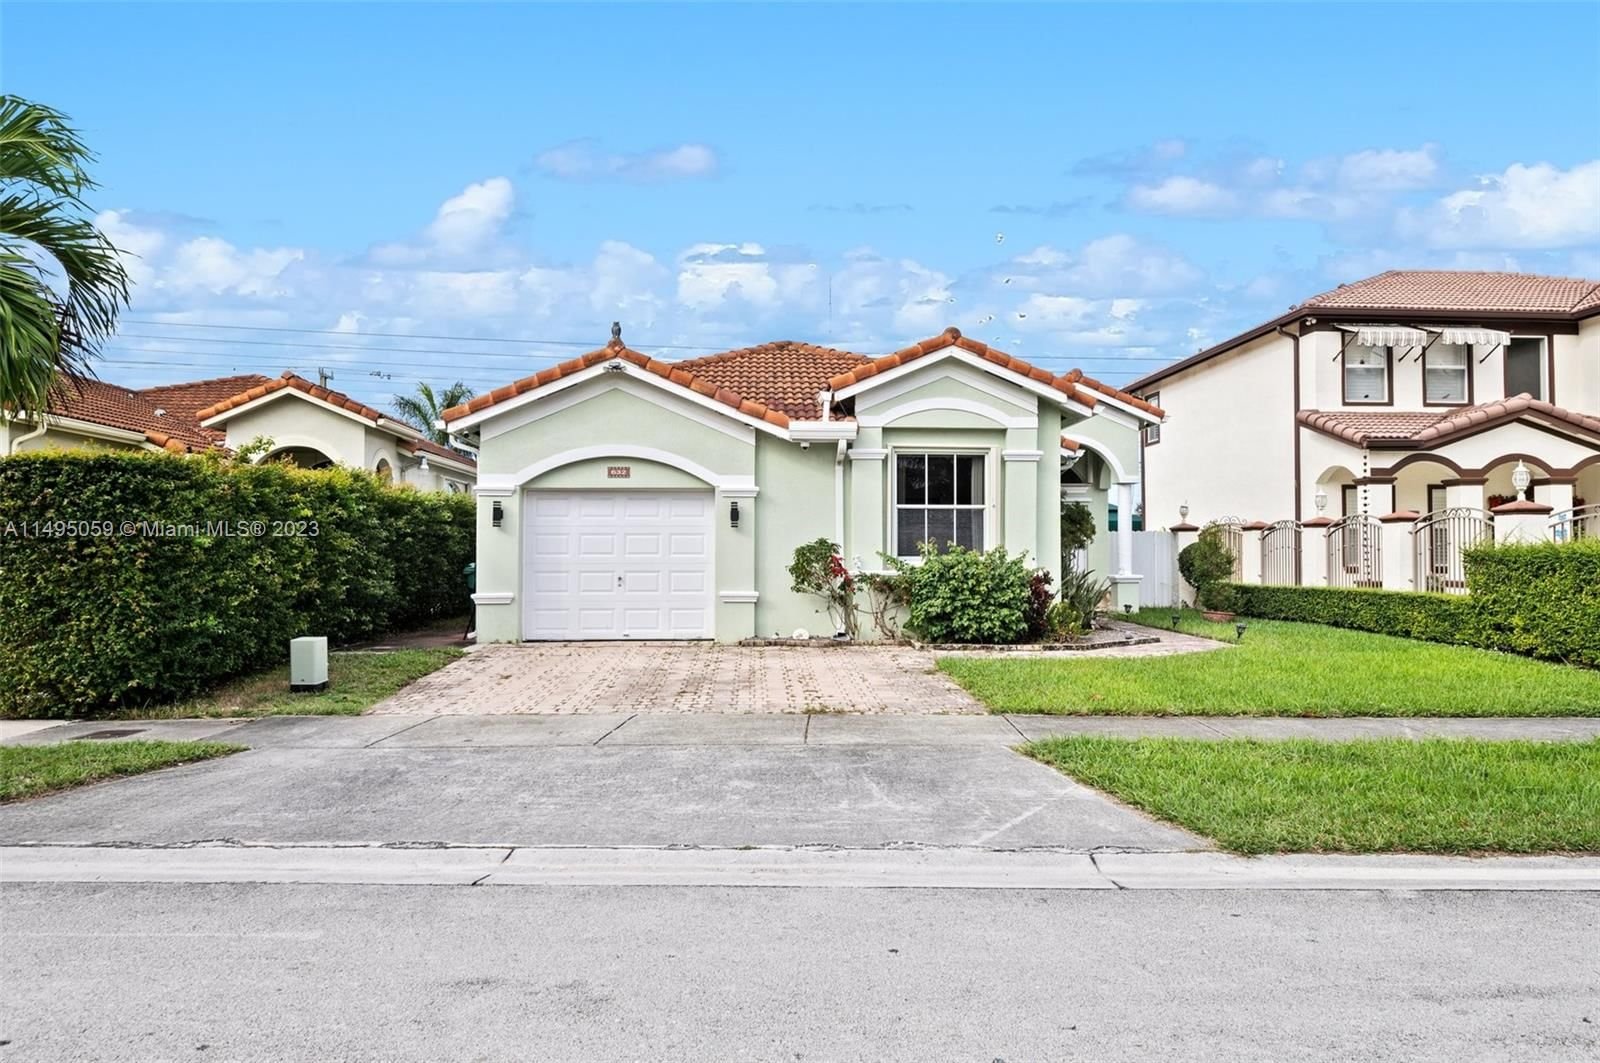 Real estate property located at 632 136th Ave, Miami-Dade County, RIVIERA TRACE, Miami, FL